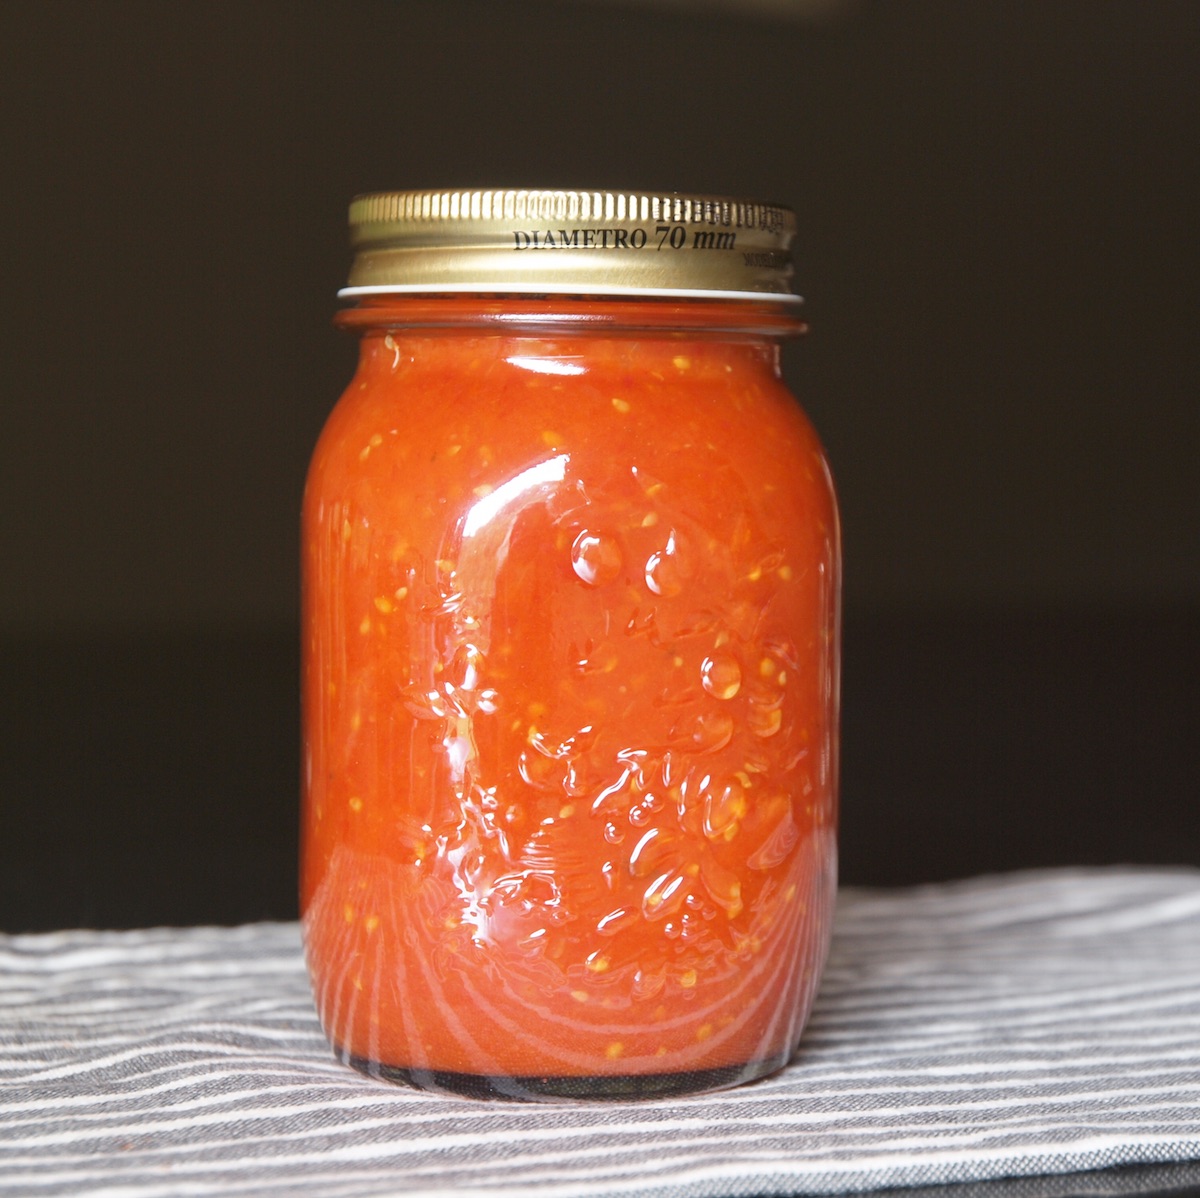 Eingekocht: Tomatensauce | alles aus dem garten